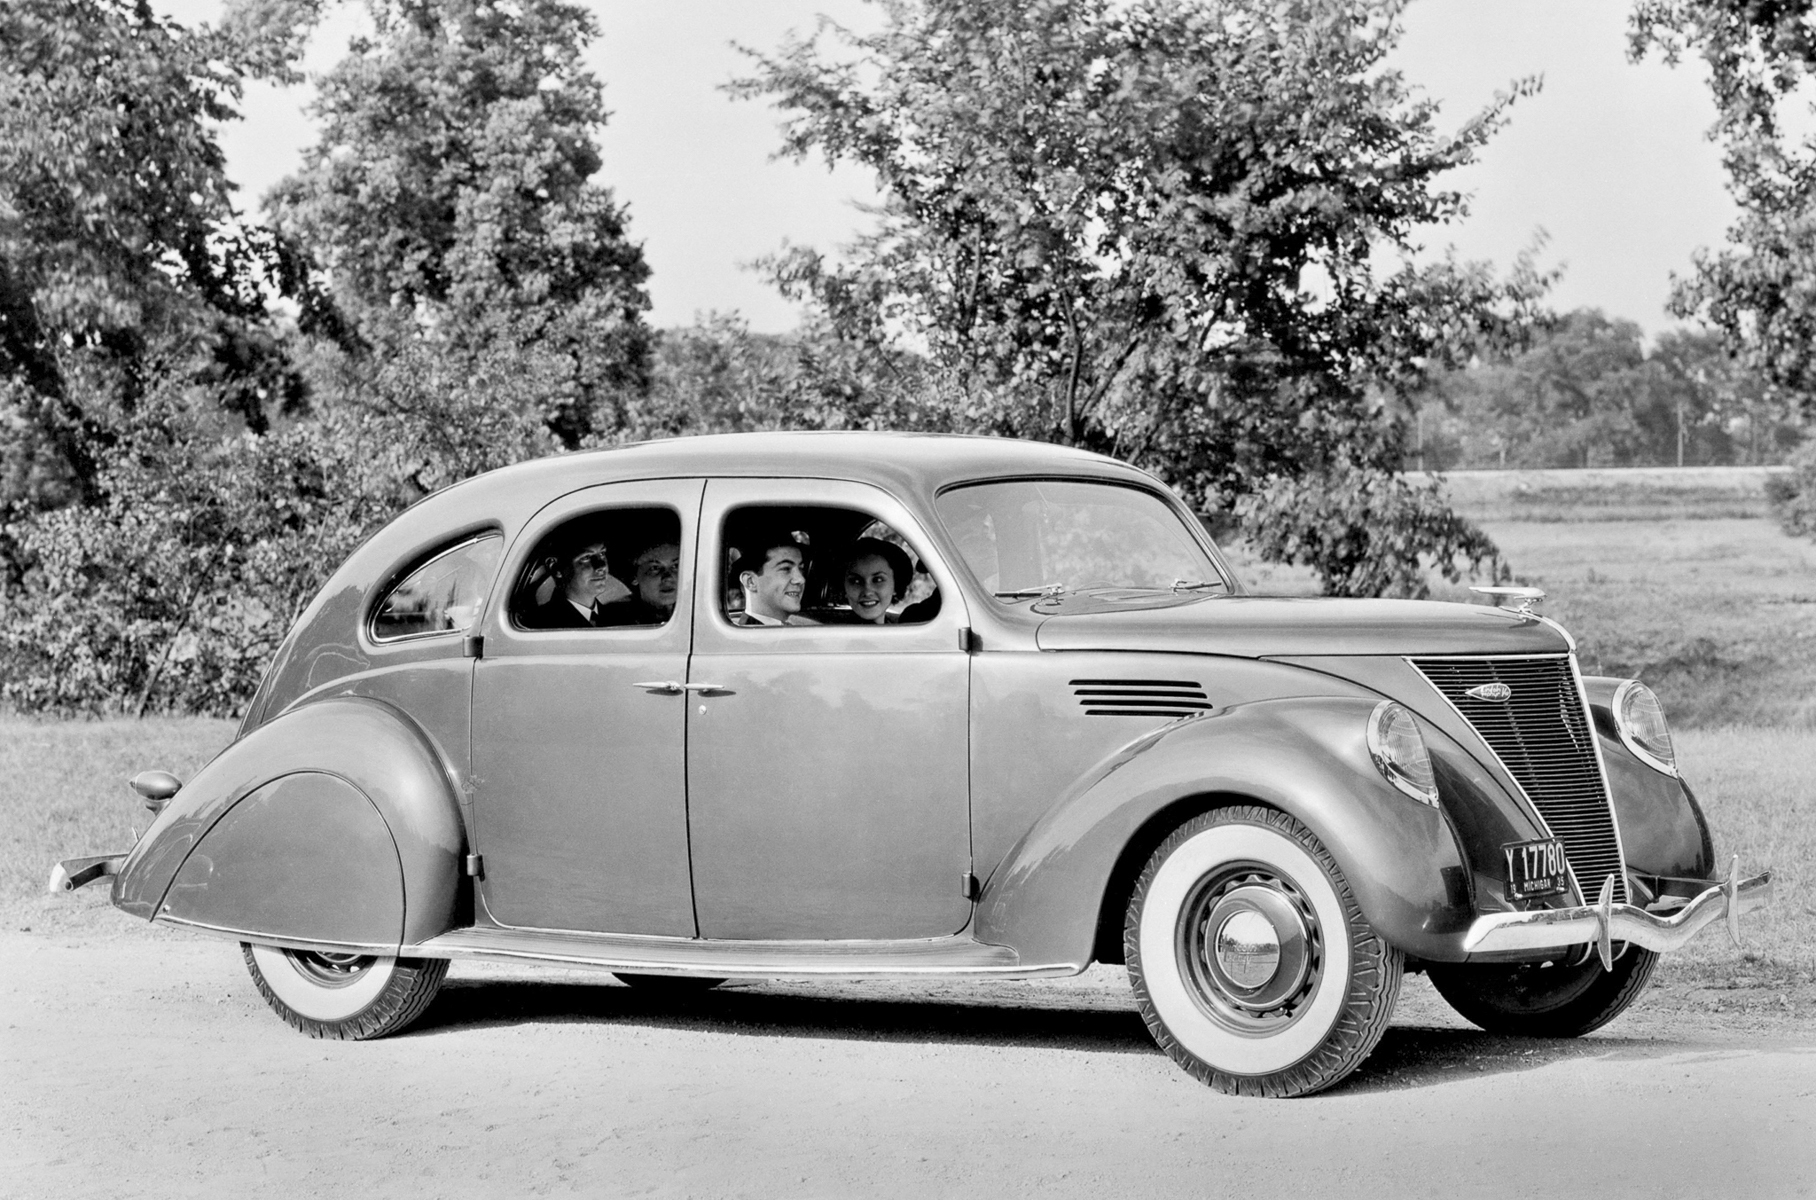 ## Lincoln Zephyr В 1936 году люксовая марка концерна Ford вскружила голову покупателям «зефиром в шоколаде» — аэродинамичными седанами, купе и кабриолетами. Неординарность заключалась в 4,4-литровом V12 (110 л.с.), сильно выделявшимся на фоне «восьмерок» конкурентов.